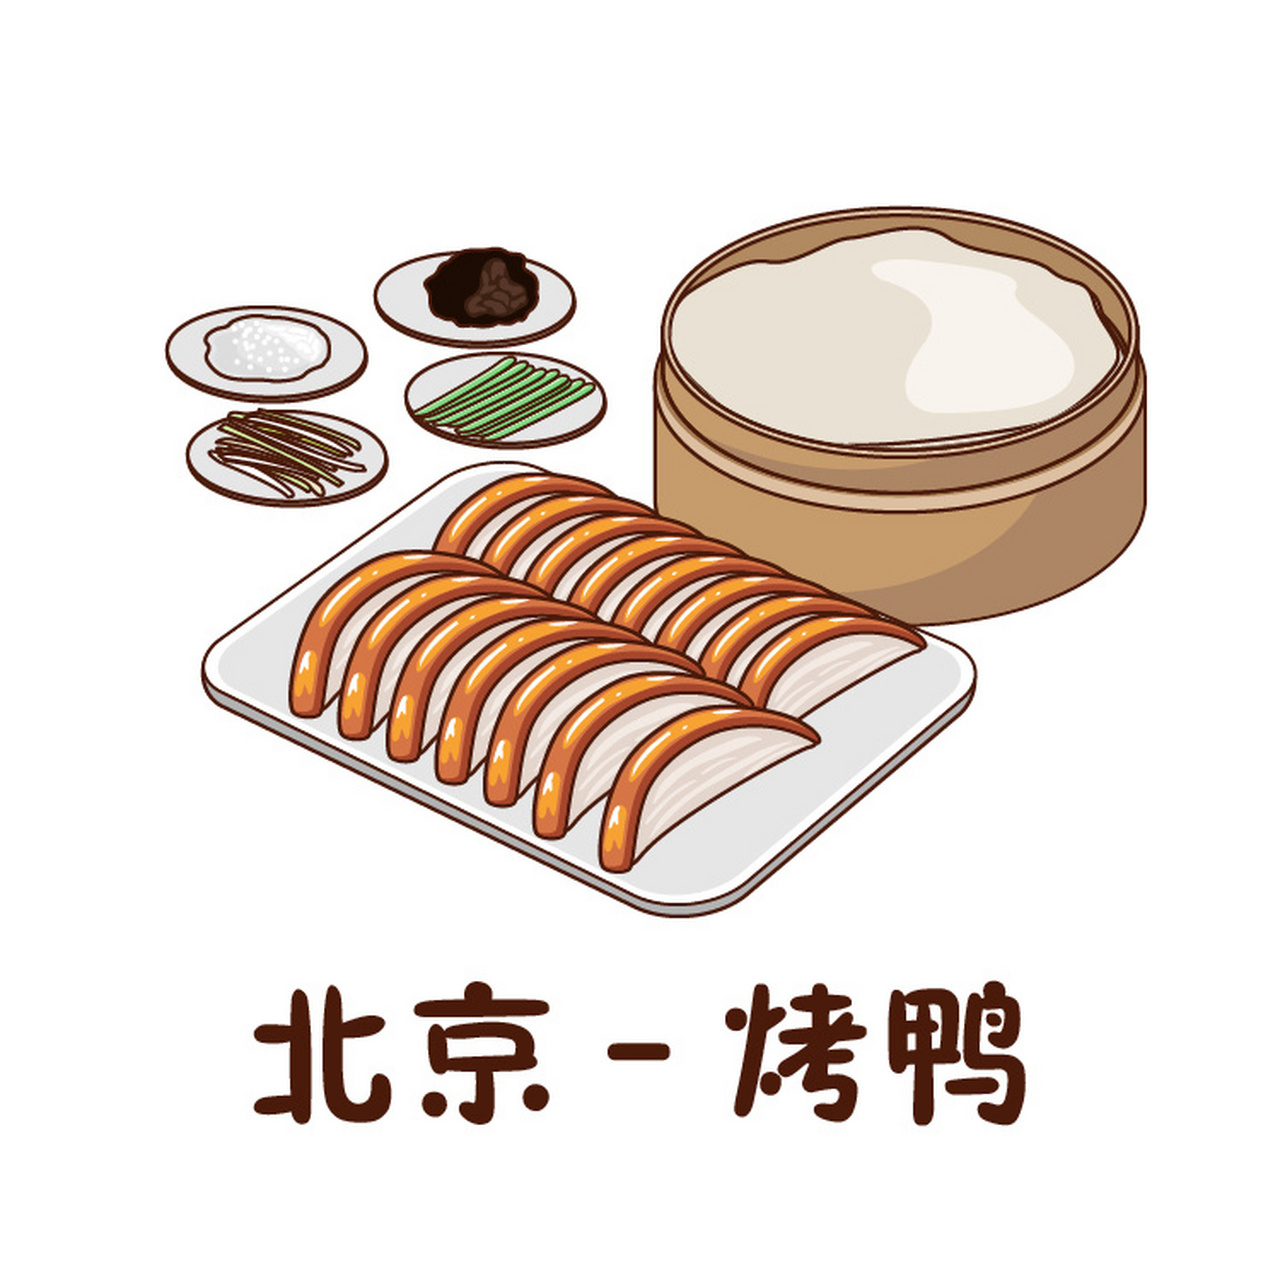 中国美食简笔画食物图片